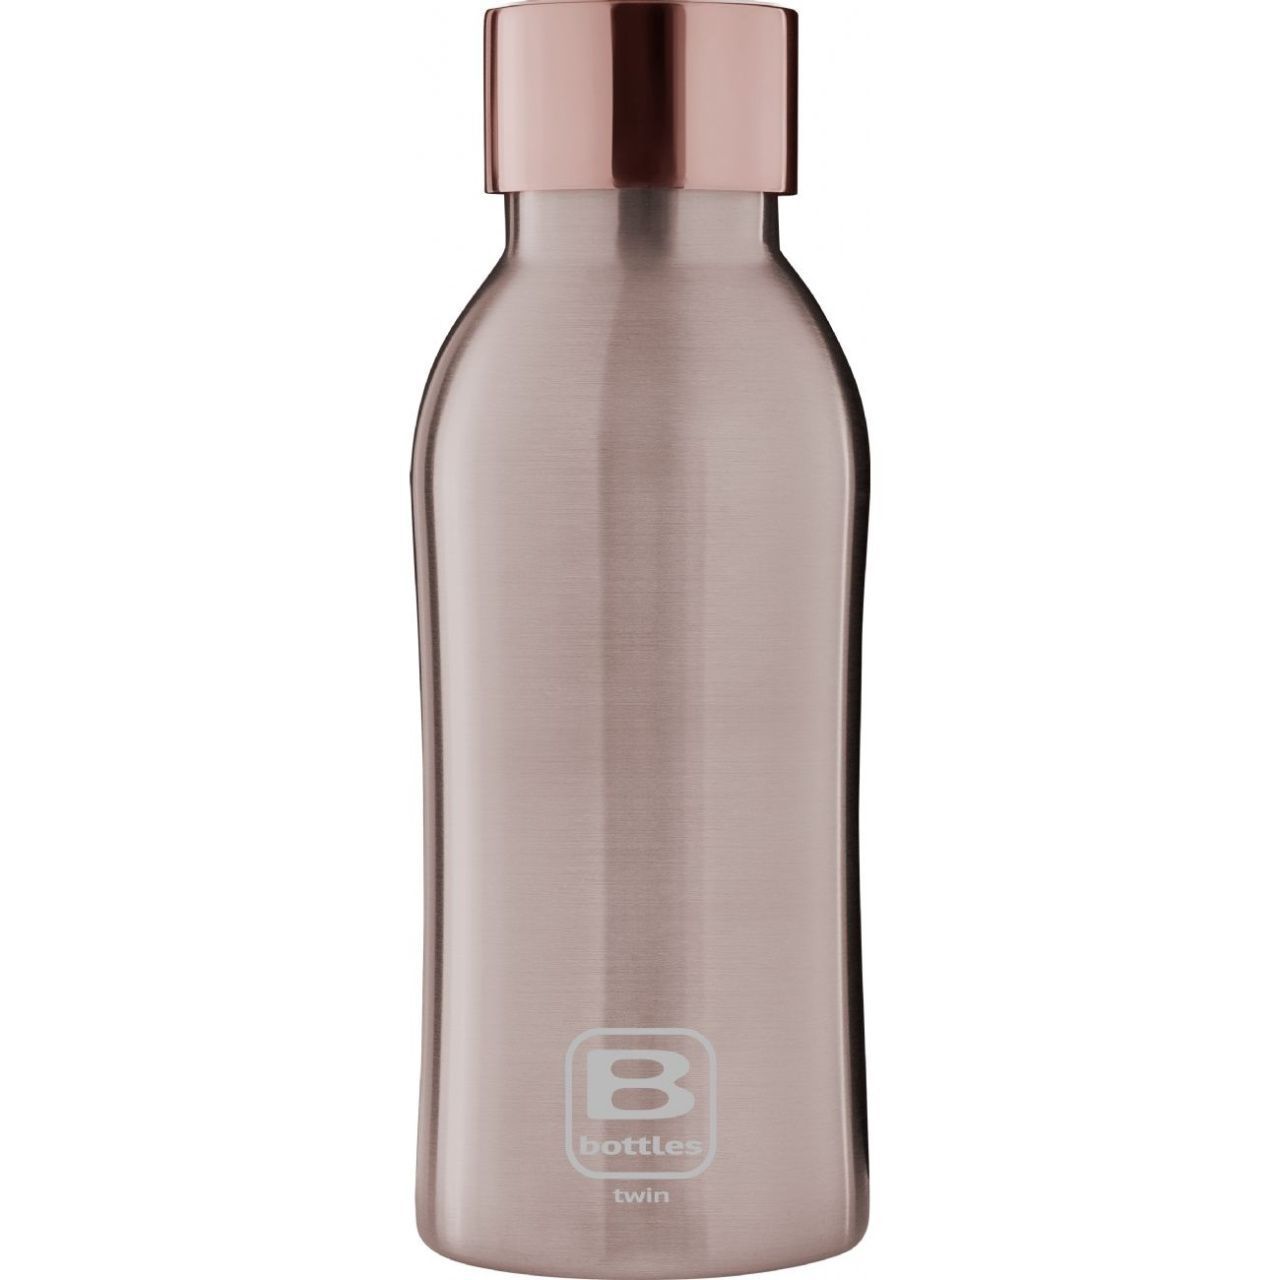 Бутылка для воды сталь. Bugatti Bottle Twin Rose. Шейкер Harper Gym Shaker Bottle s19 0.5 л. Бугатти бутылки для воды. Бутылка для воды Hip.